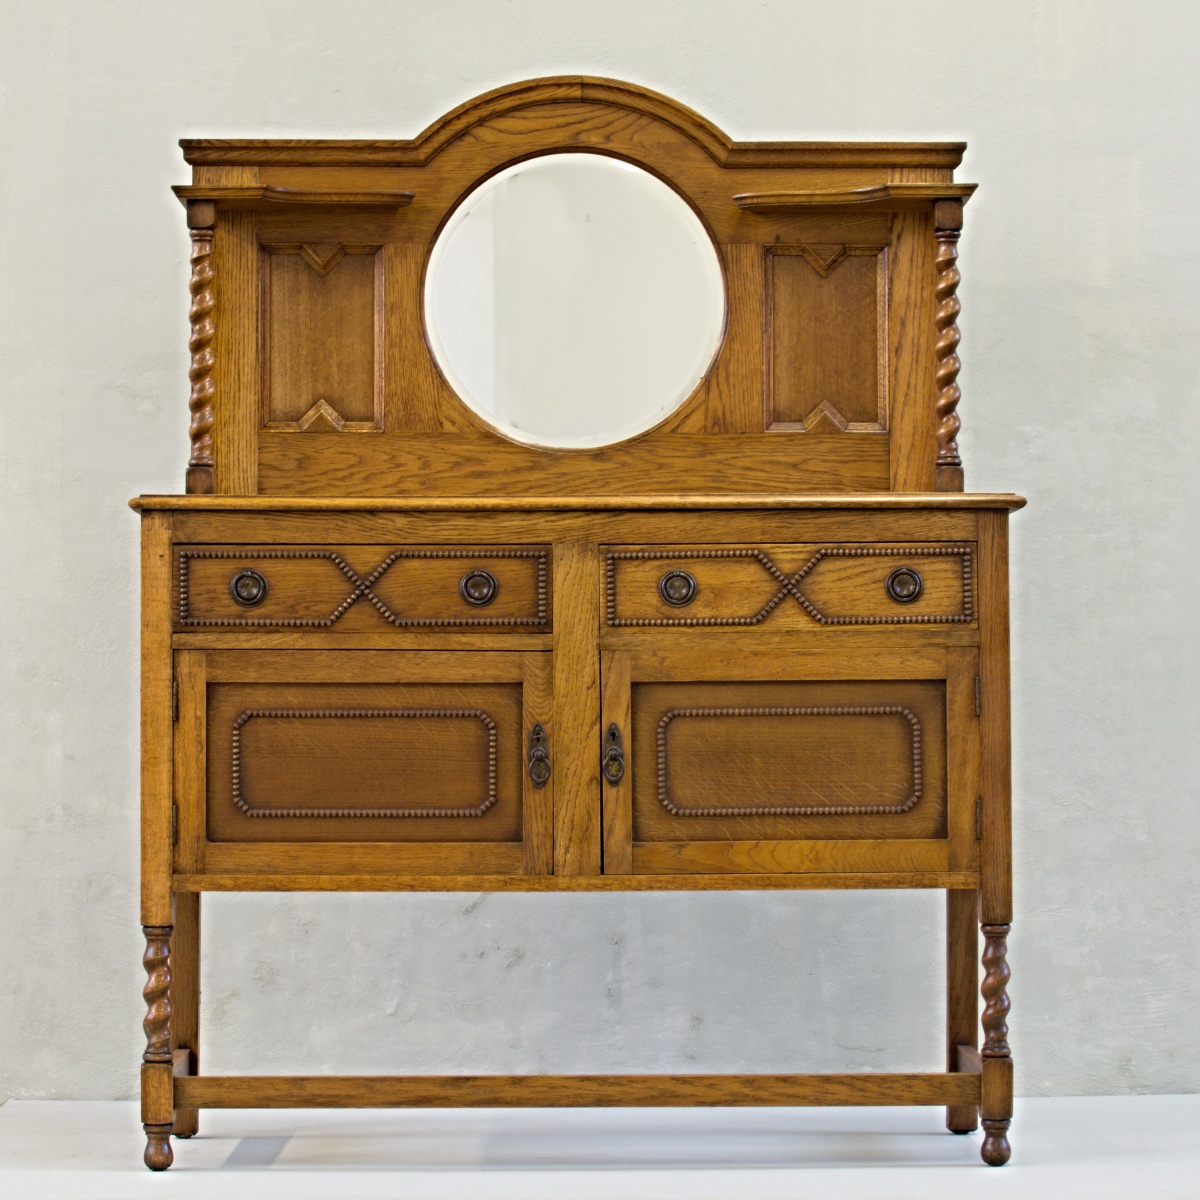 anglická dubová komoda se zrcadlem příborník mirrored sideboard vintage stylový nábytek po renovaci do původního stavu restored furniture